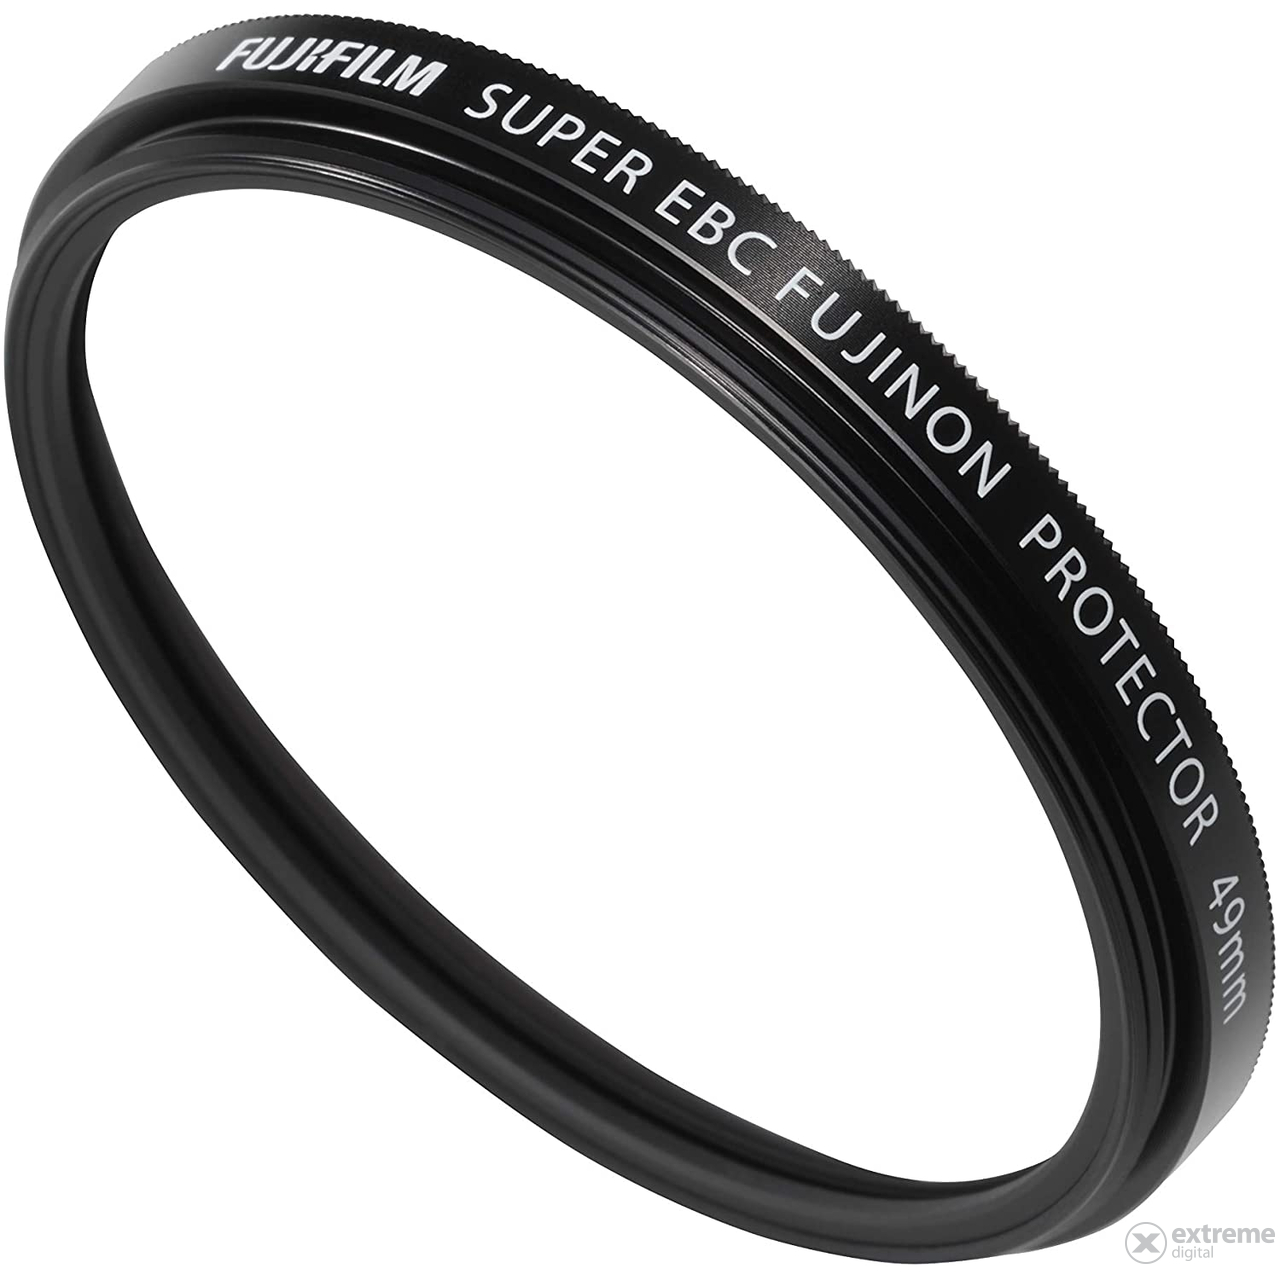 Zaščitni filter Fujifilm PRF-49, 49 mm, črn